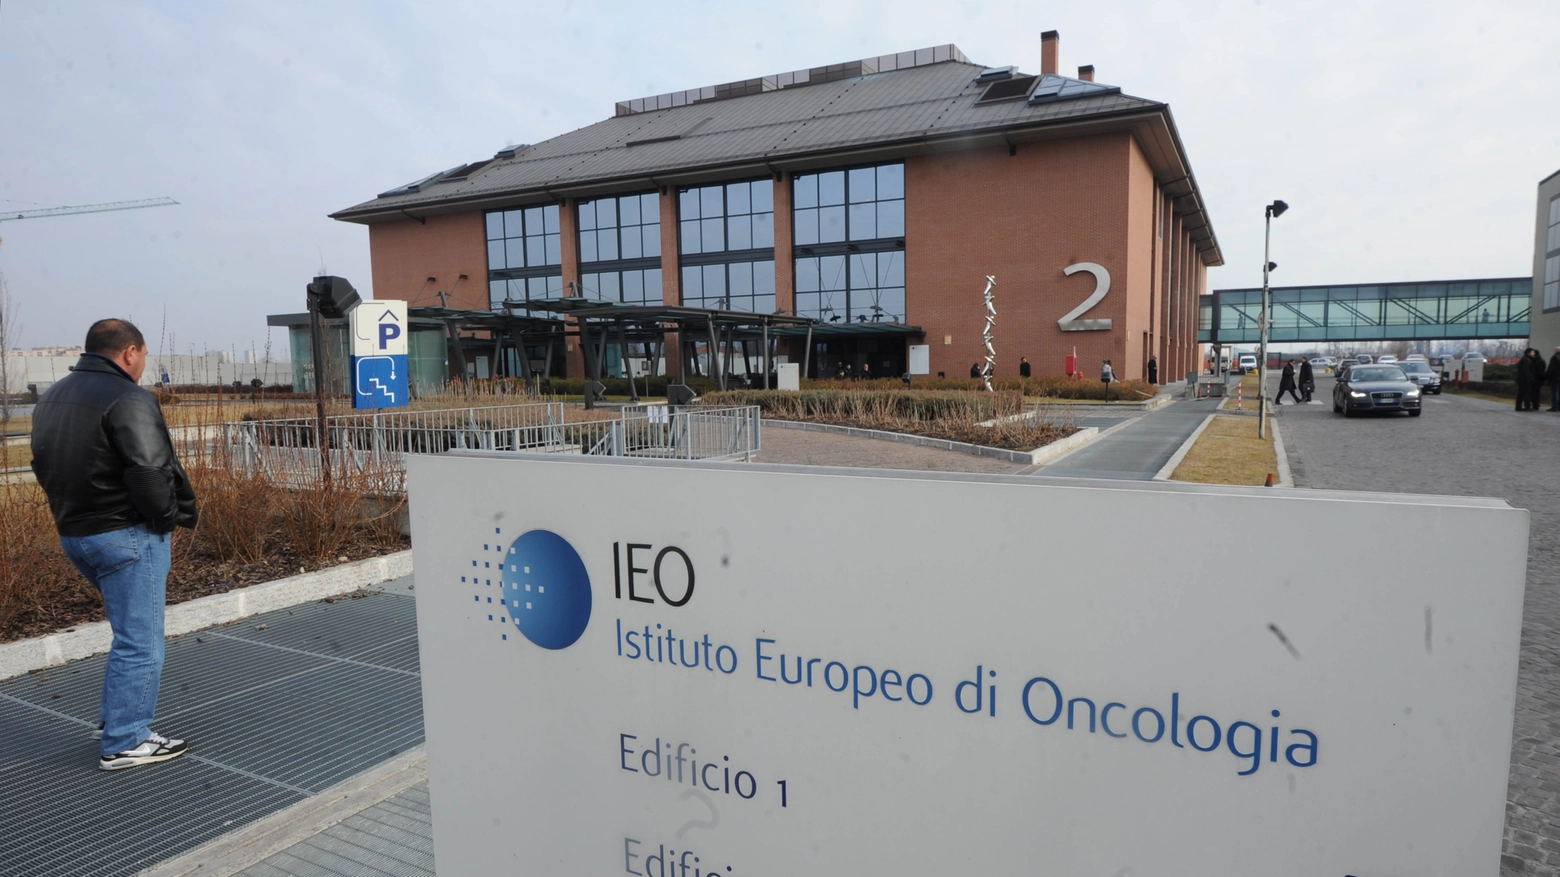 L'esterno dello Ieo, Istituto Europeo di Oncologia